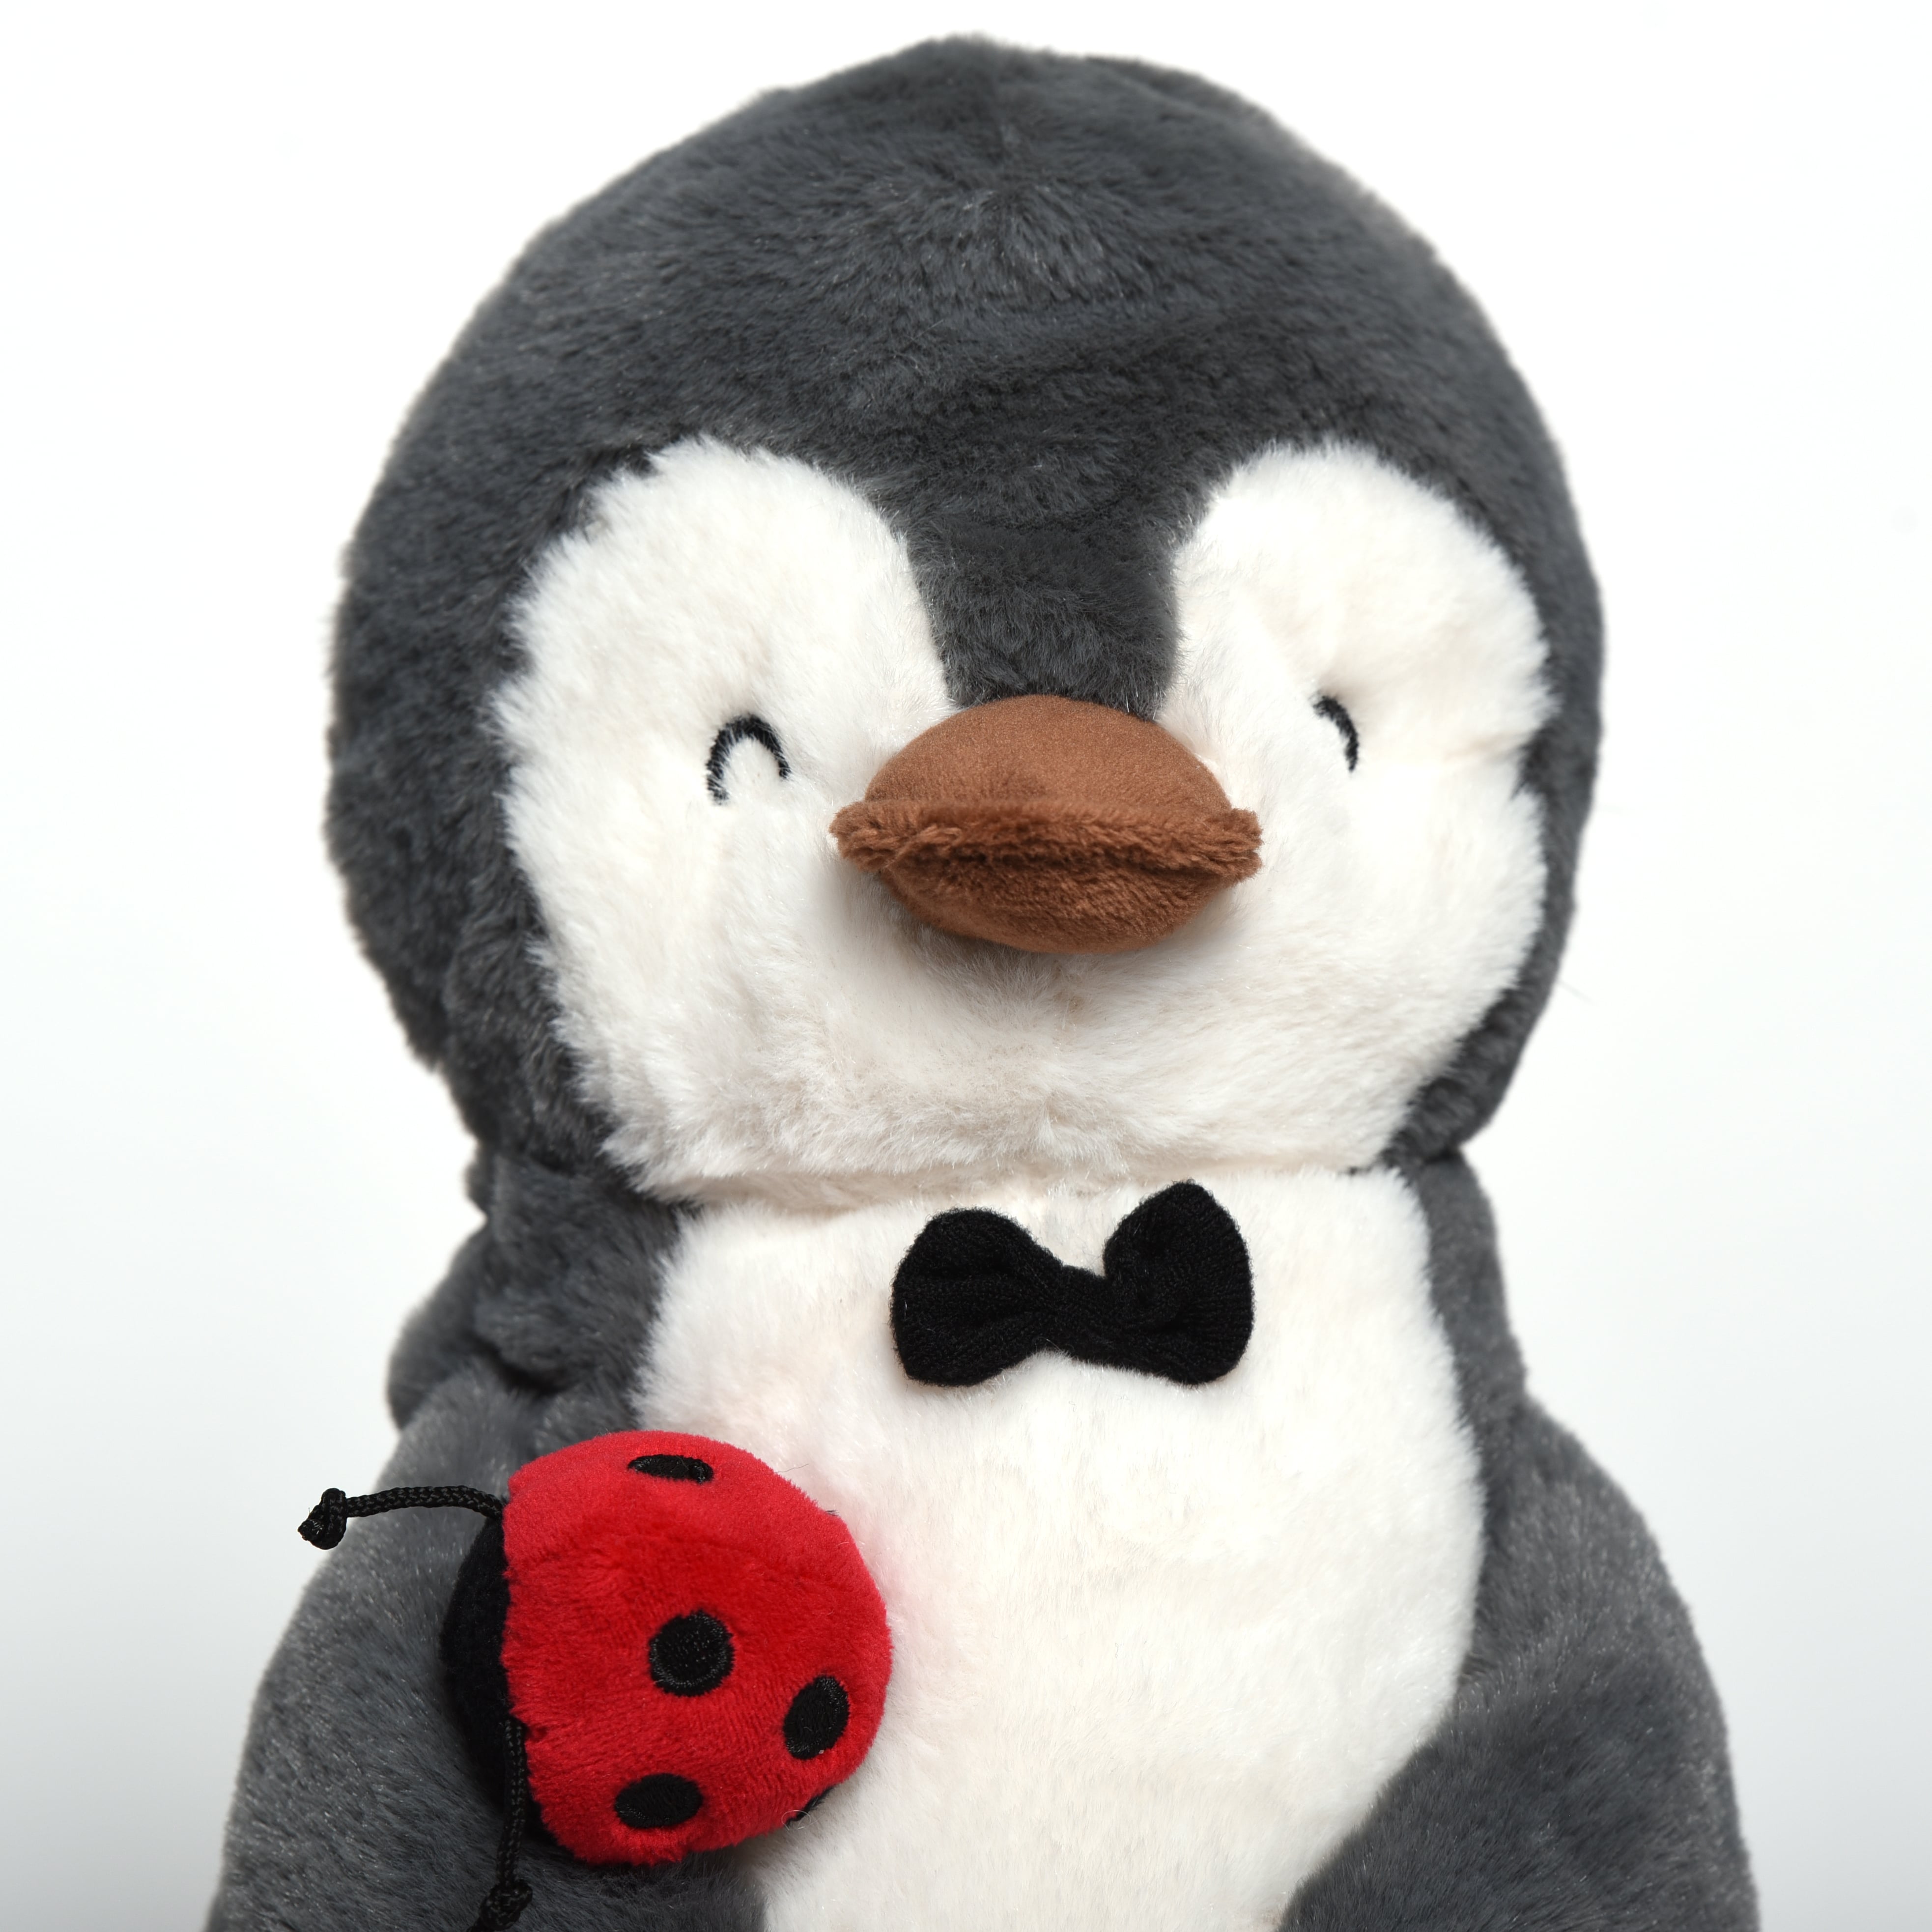 Personalisiert Pinguin Paar Geschenke für Sie Ihn Freundin Ehefrau